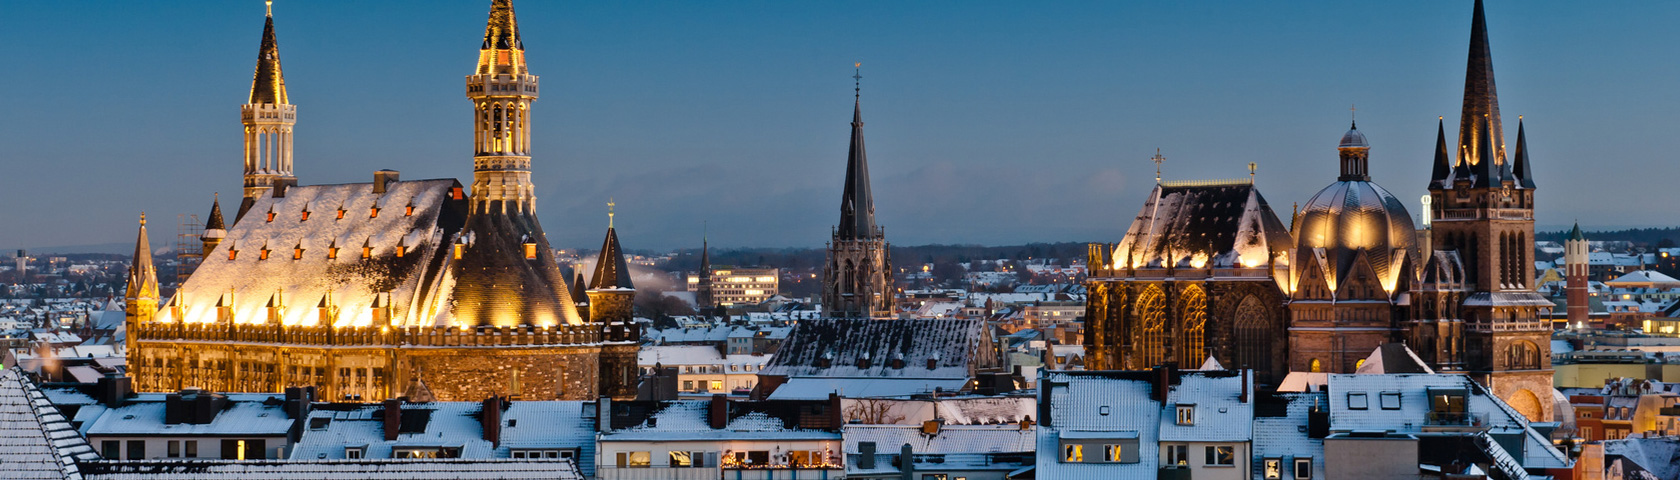 Blick über Aachen im Winter bei Nacht